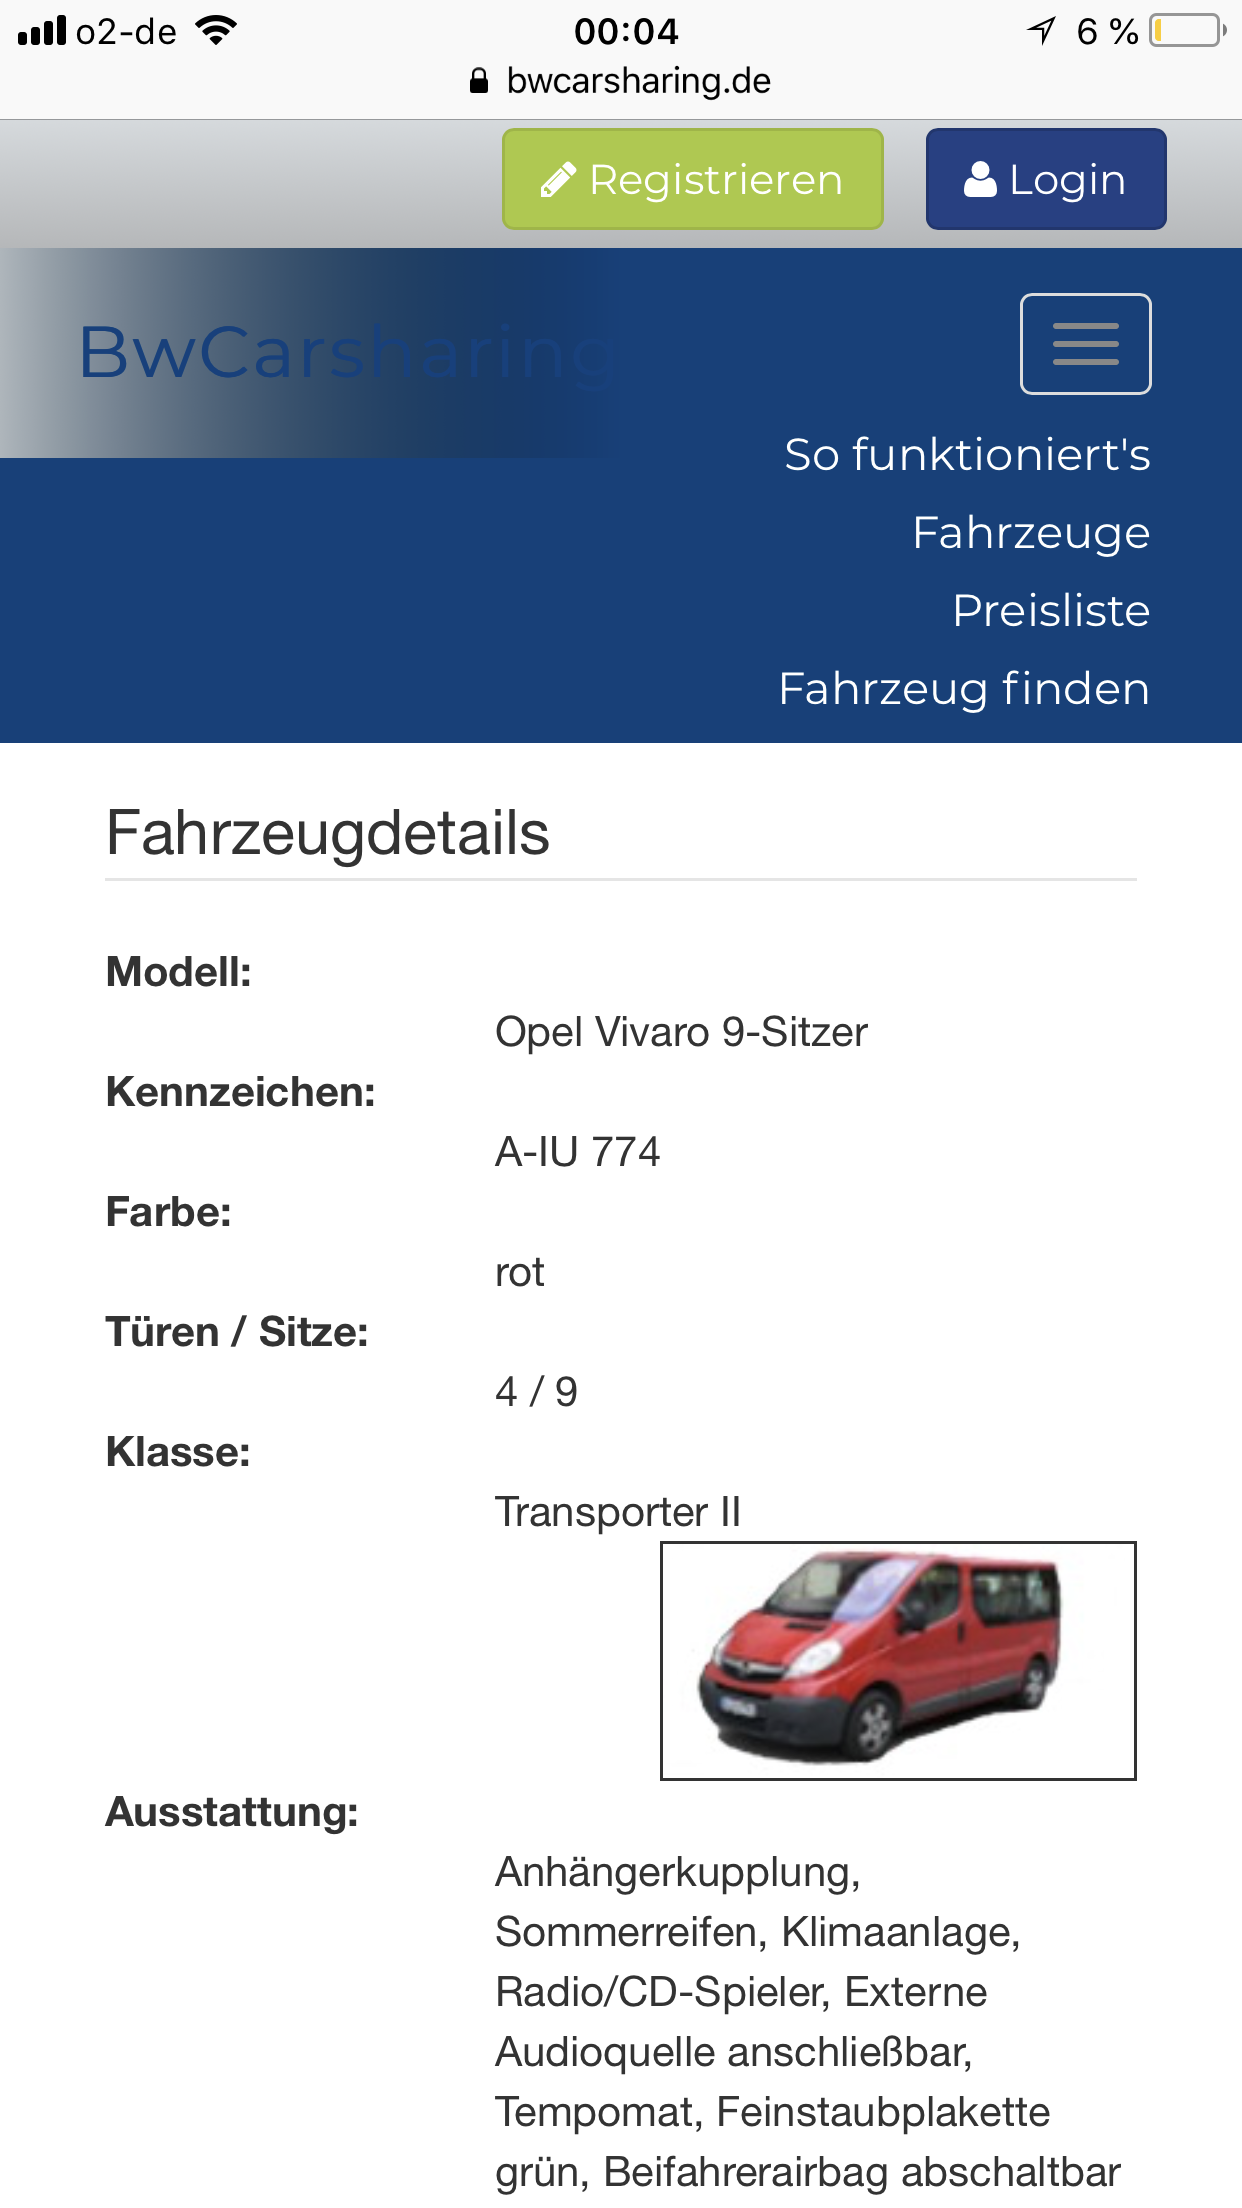 Mietwagen mit Anhängerkupplung mit 18 Jahren leihen - Mietwagen-Talk.de